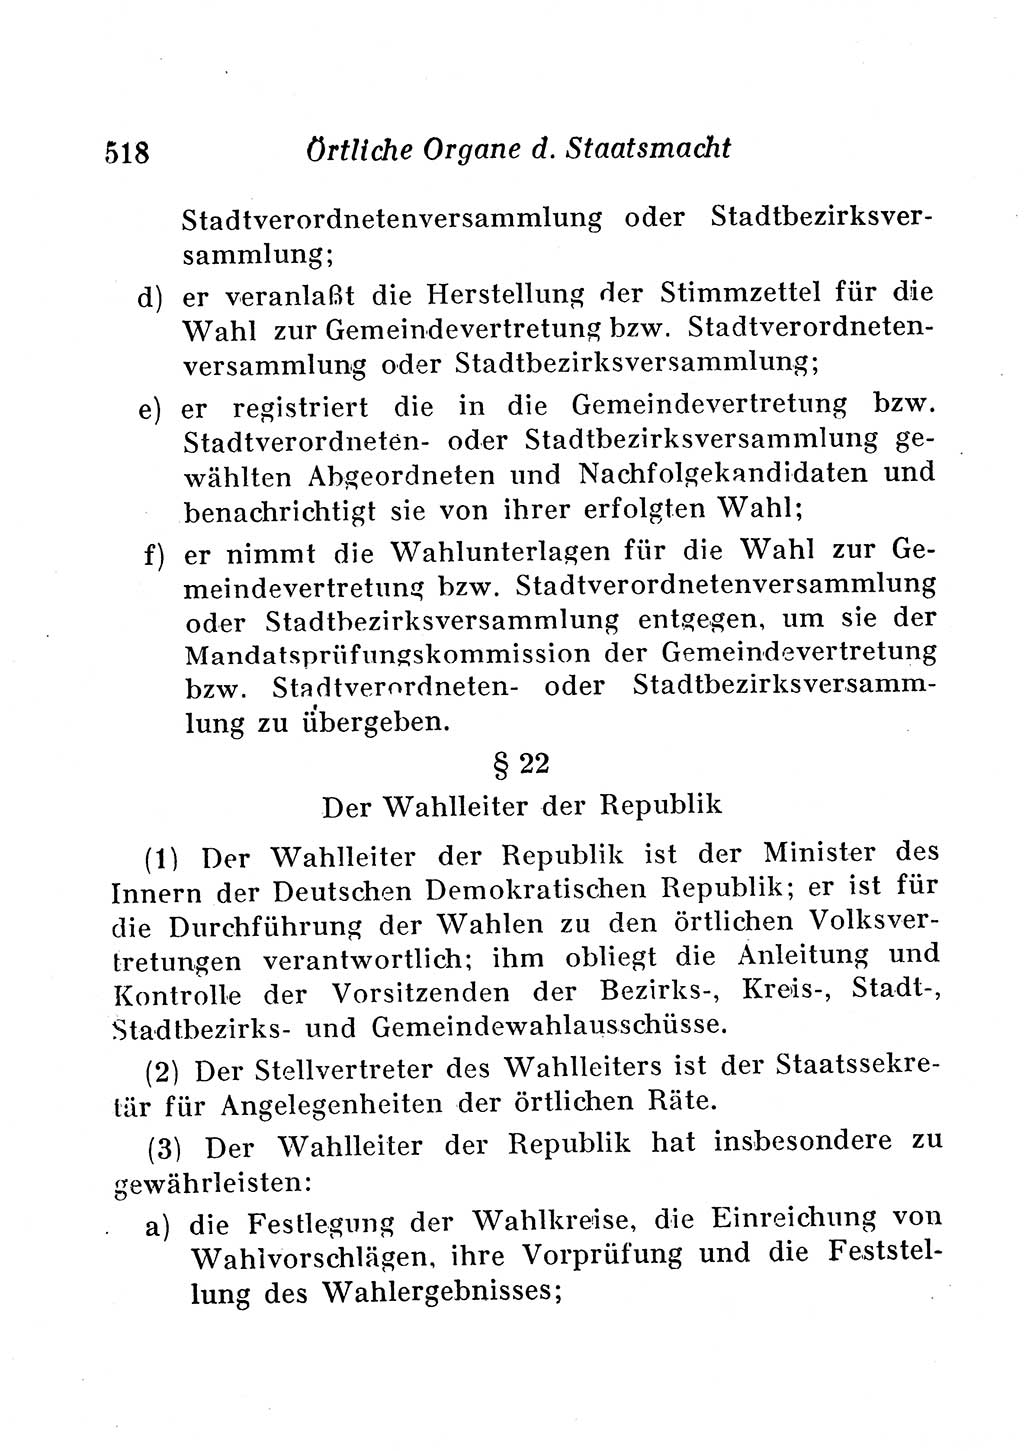 Staats- und verwaltungsrechtliche Gesetze der Deutschen Demokratischen Republik (DDR) 1958, Seite 518 (StVerwR Ges. DDR 1958, S. 518)